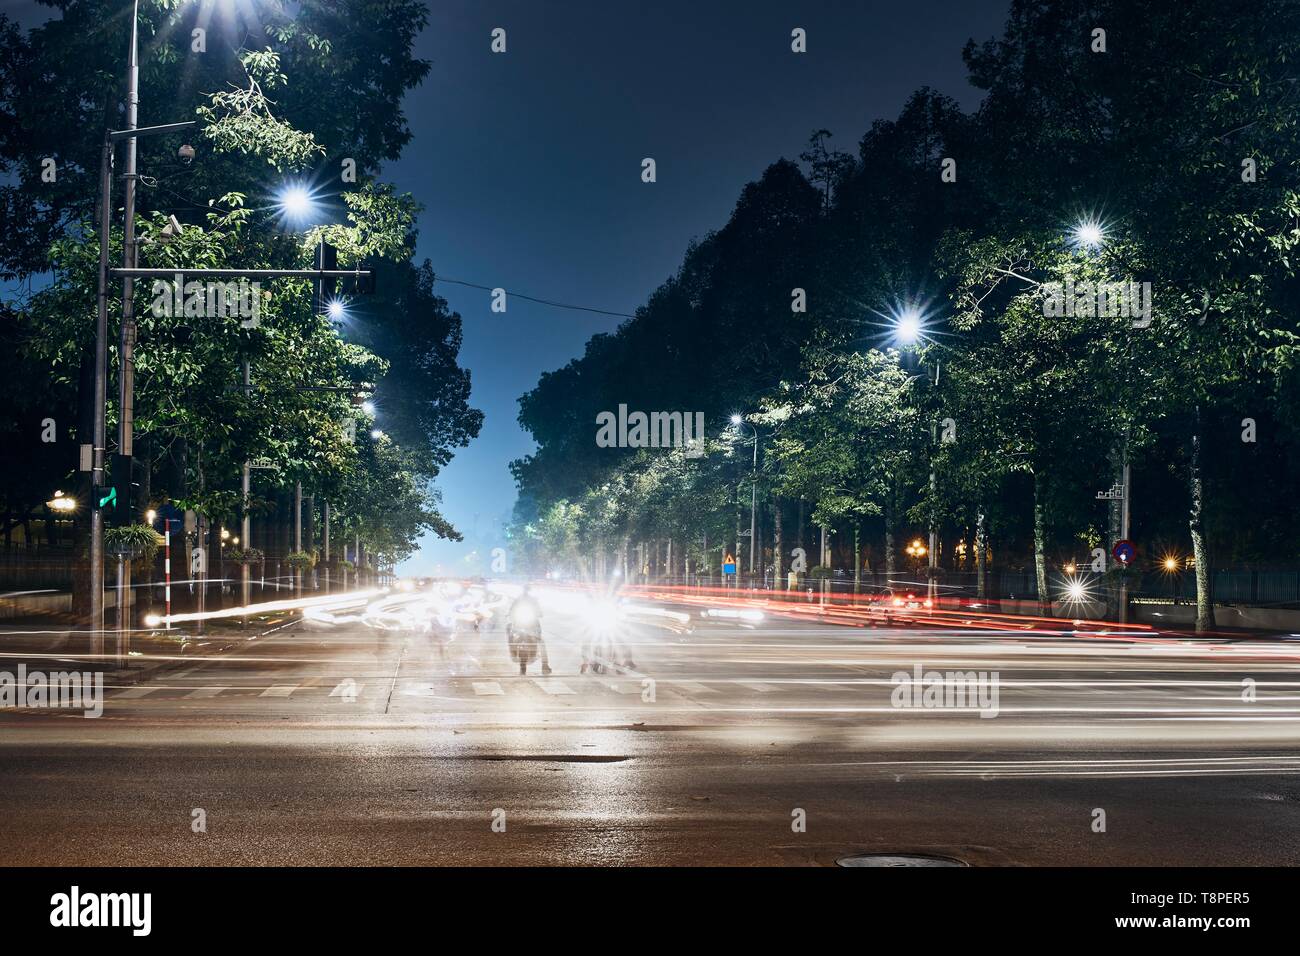 Les motos en attente sur carrefour. Les sentiers de la lumière de la circulation en ville. Nuit à Hanoi, Vietnam. Banque D'Images